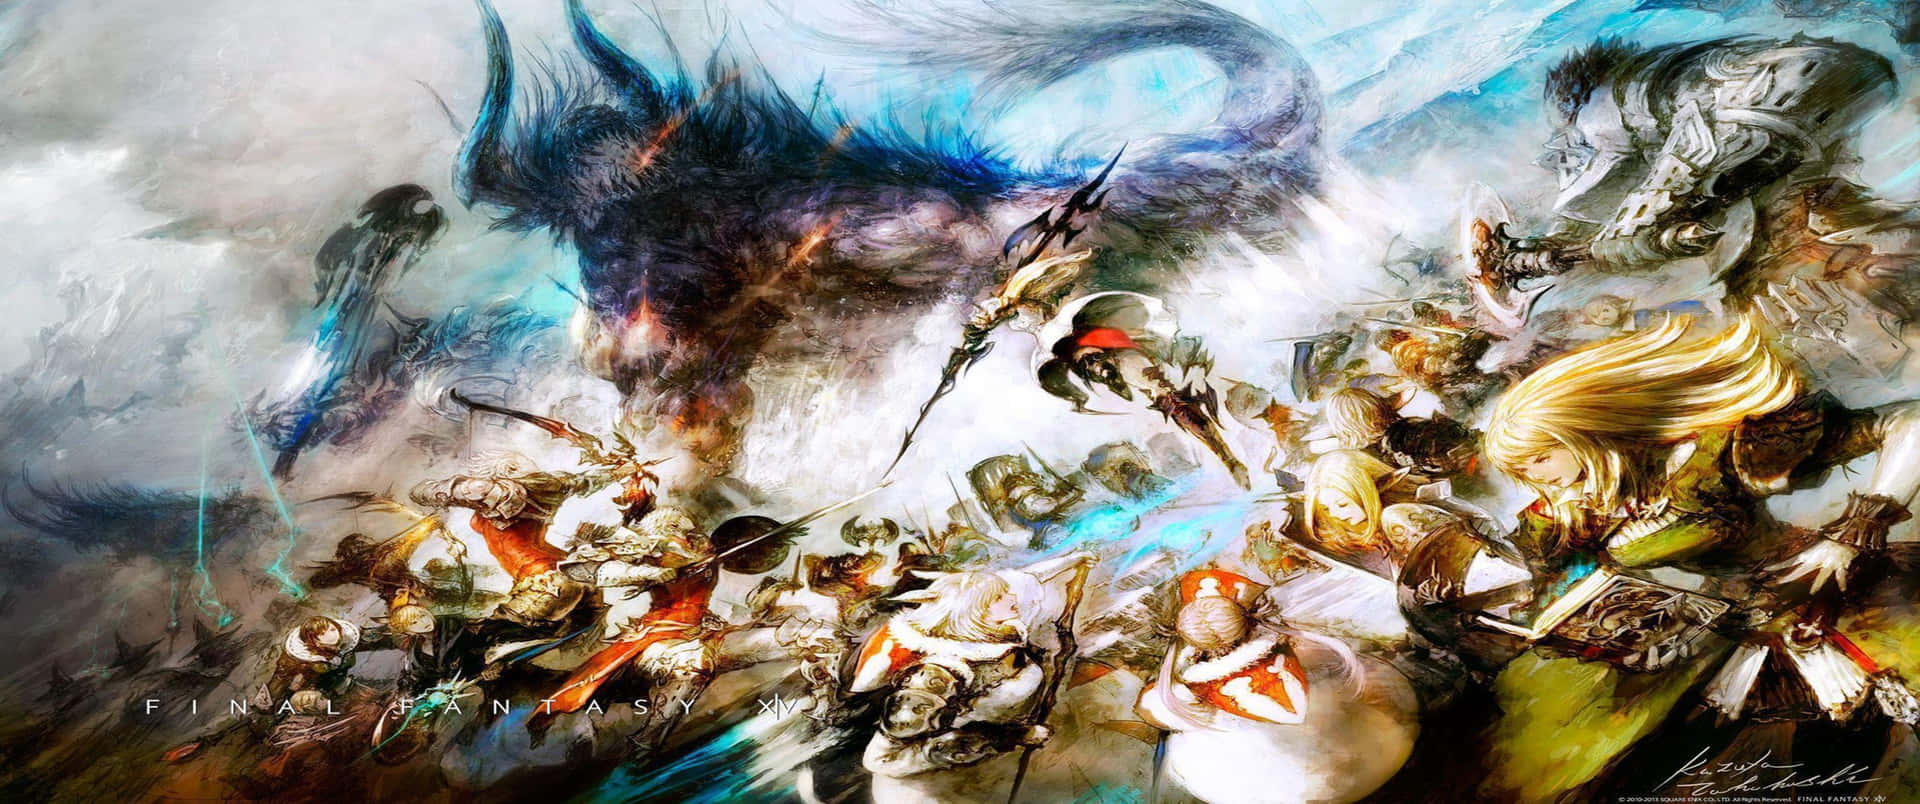 Genießensie Einen Atemberaubenden Blick Auf Den Nachthimmel In Final Fantasy Xv.